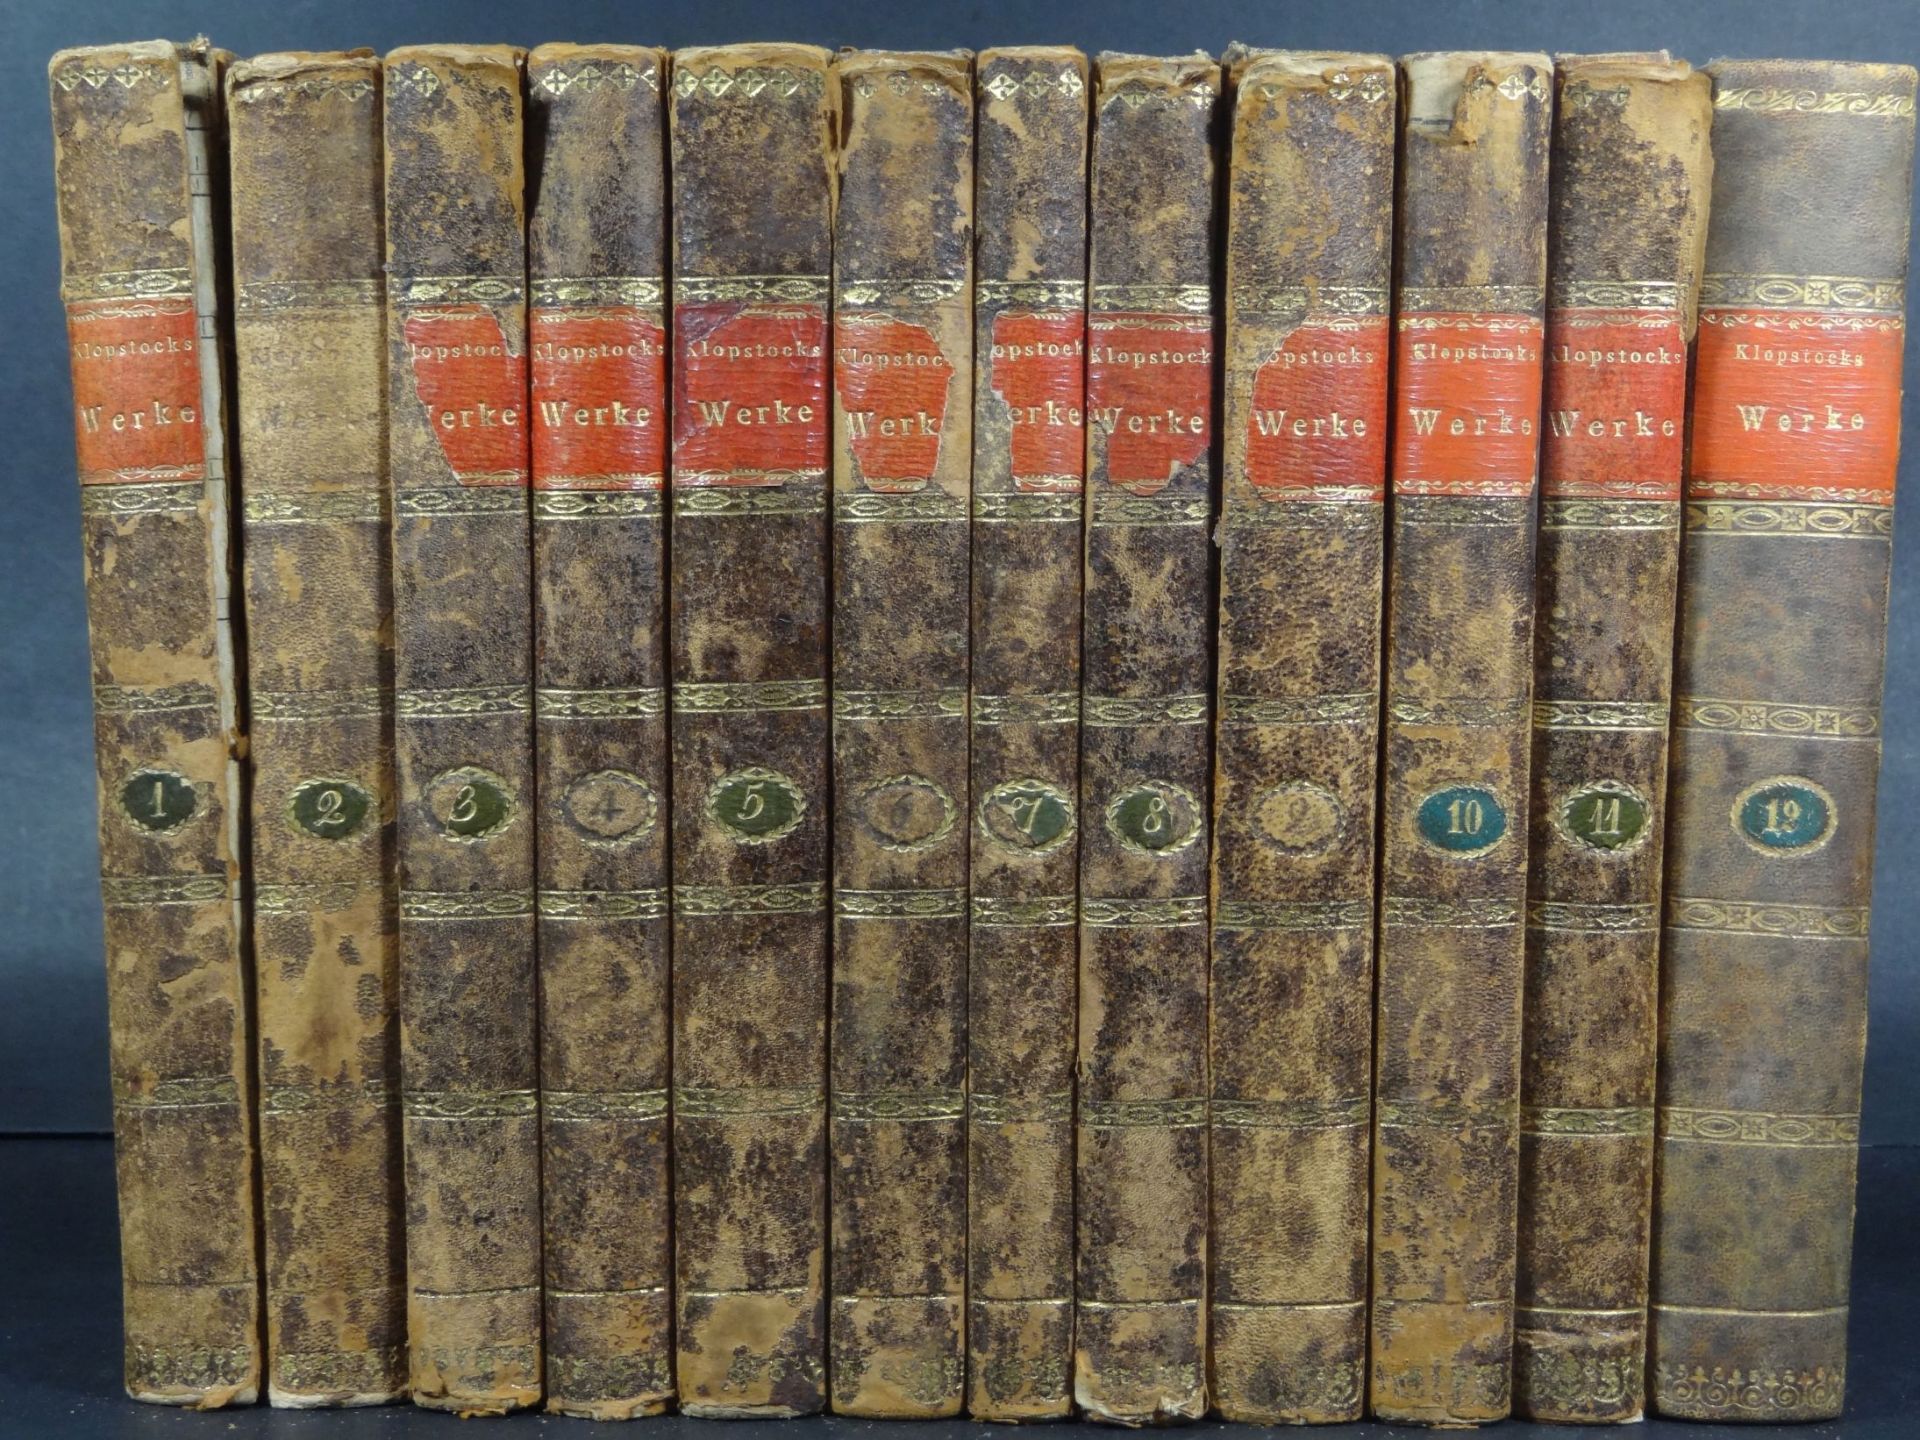 "Klopstocks Werke" von 1797 an, 12 Bände, Alters-u. Gebrauchsspure- - -22.61 % buyer's premium on